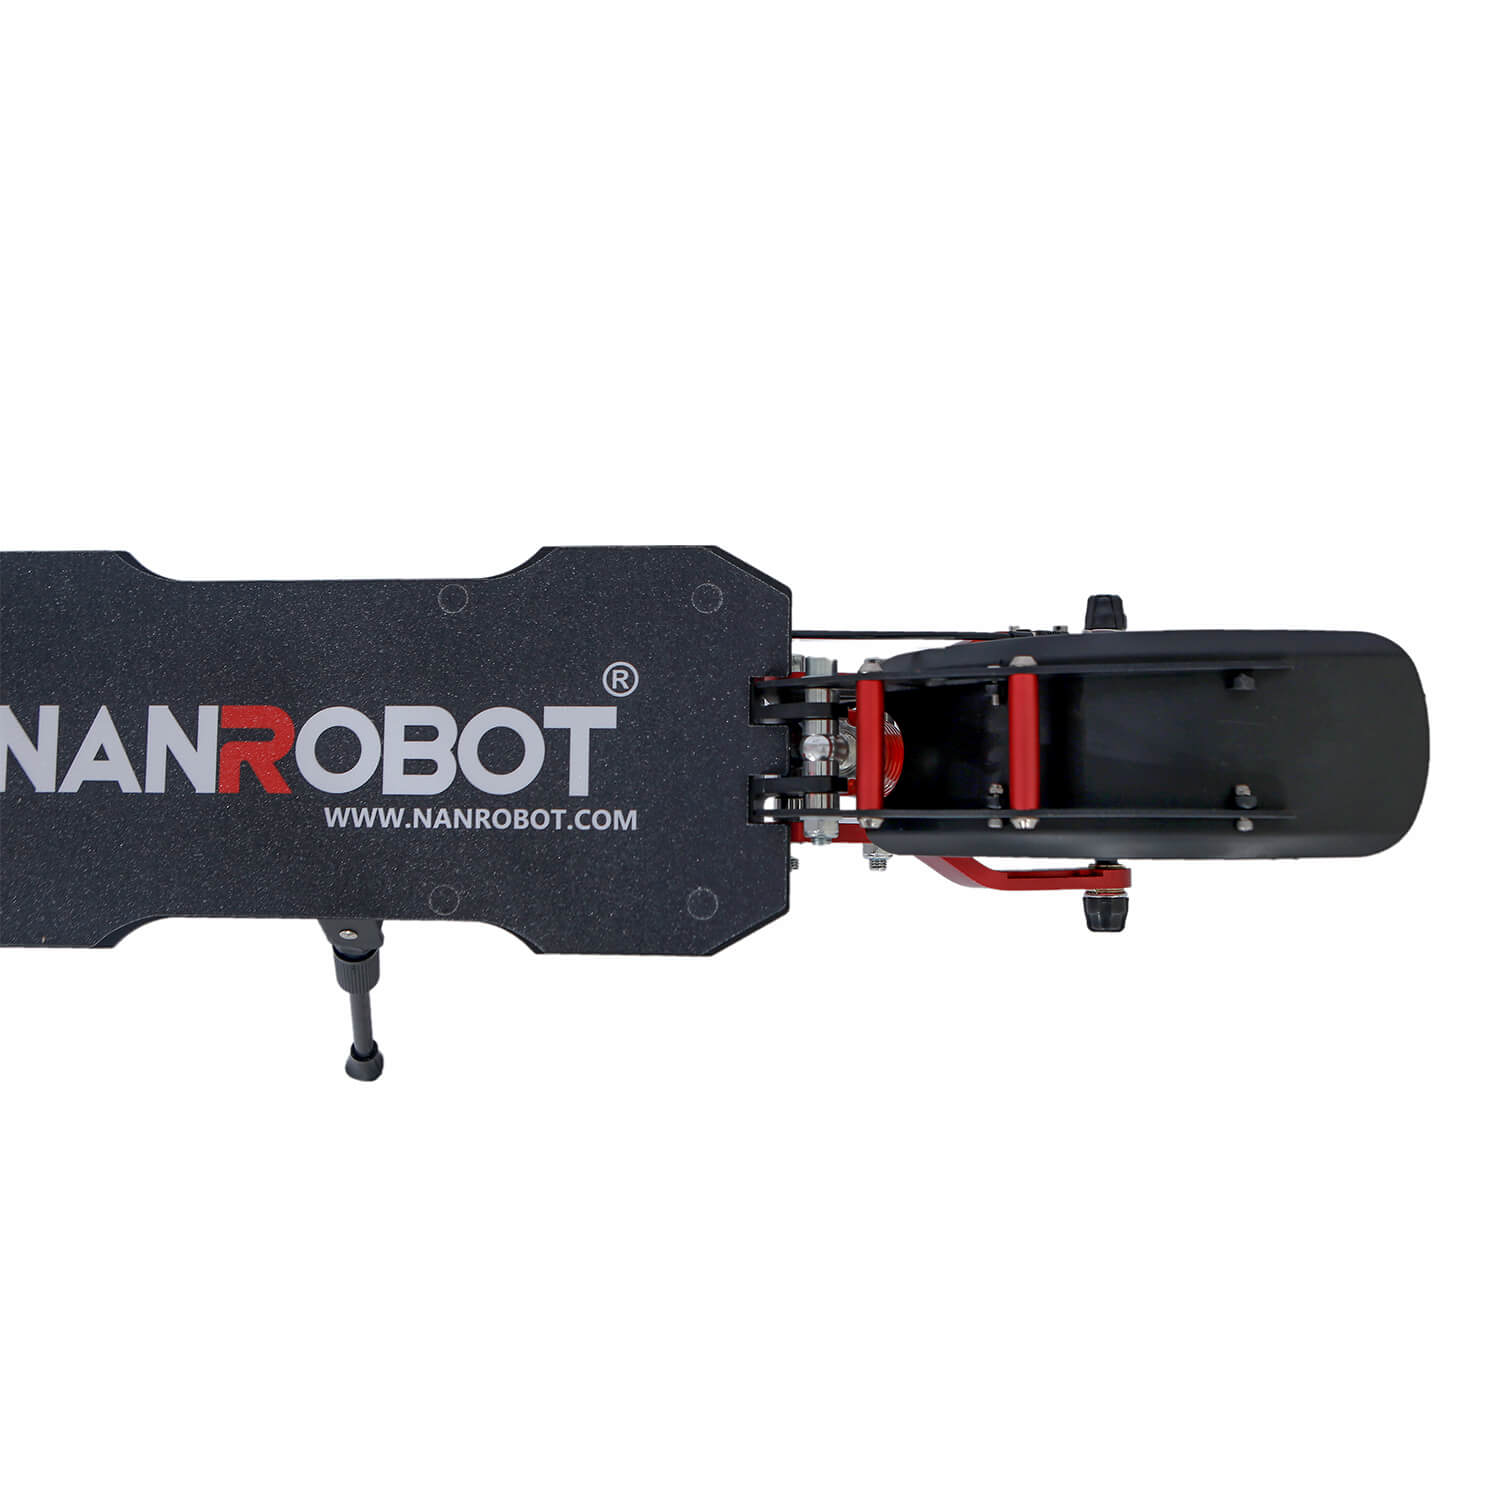 Nanrobot D4+3.0 Electric Scooter 10”-2000W-52V 23.4Ah - NANROBOT